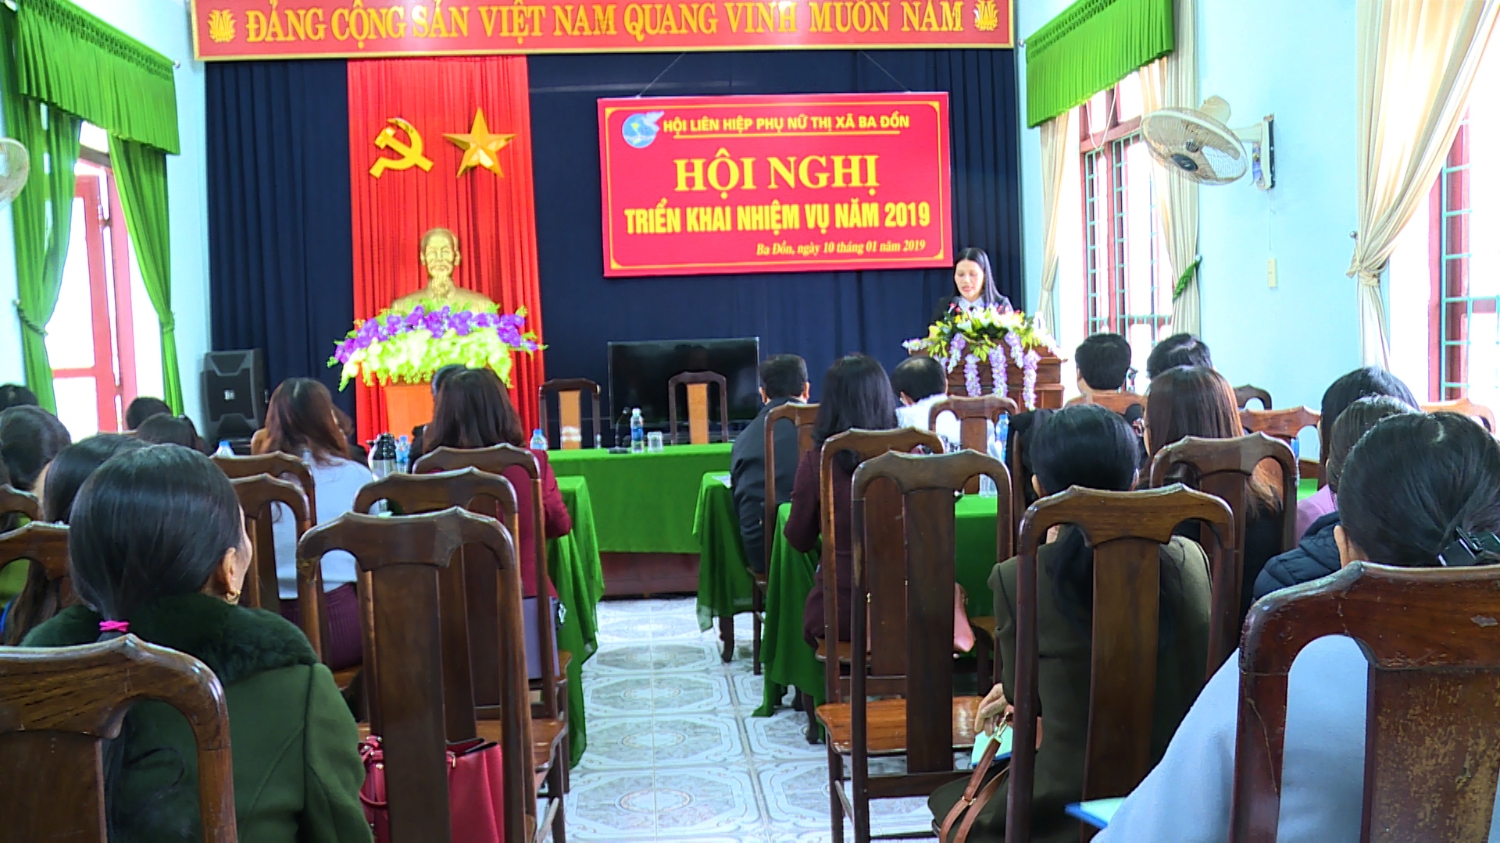 Hội Liên hiệp Phụ nữ thị xã Ba Đồn tổ chức Hội nghị triển khai nhiệm vụ năm 2019.